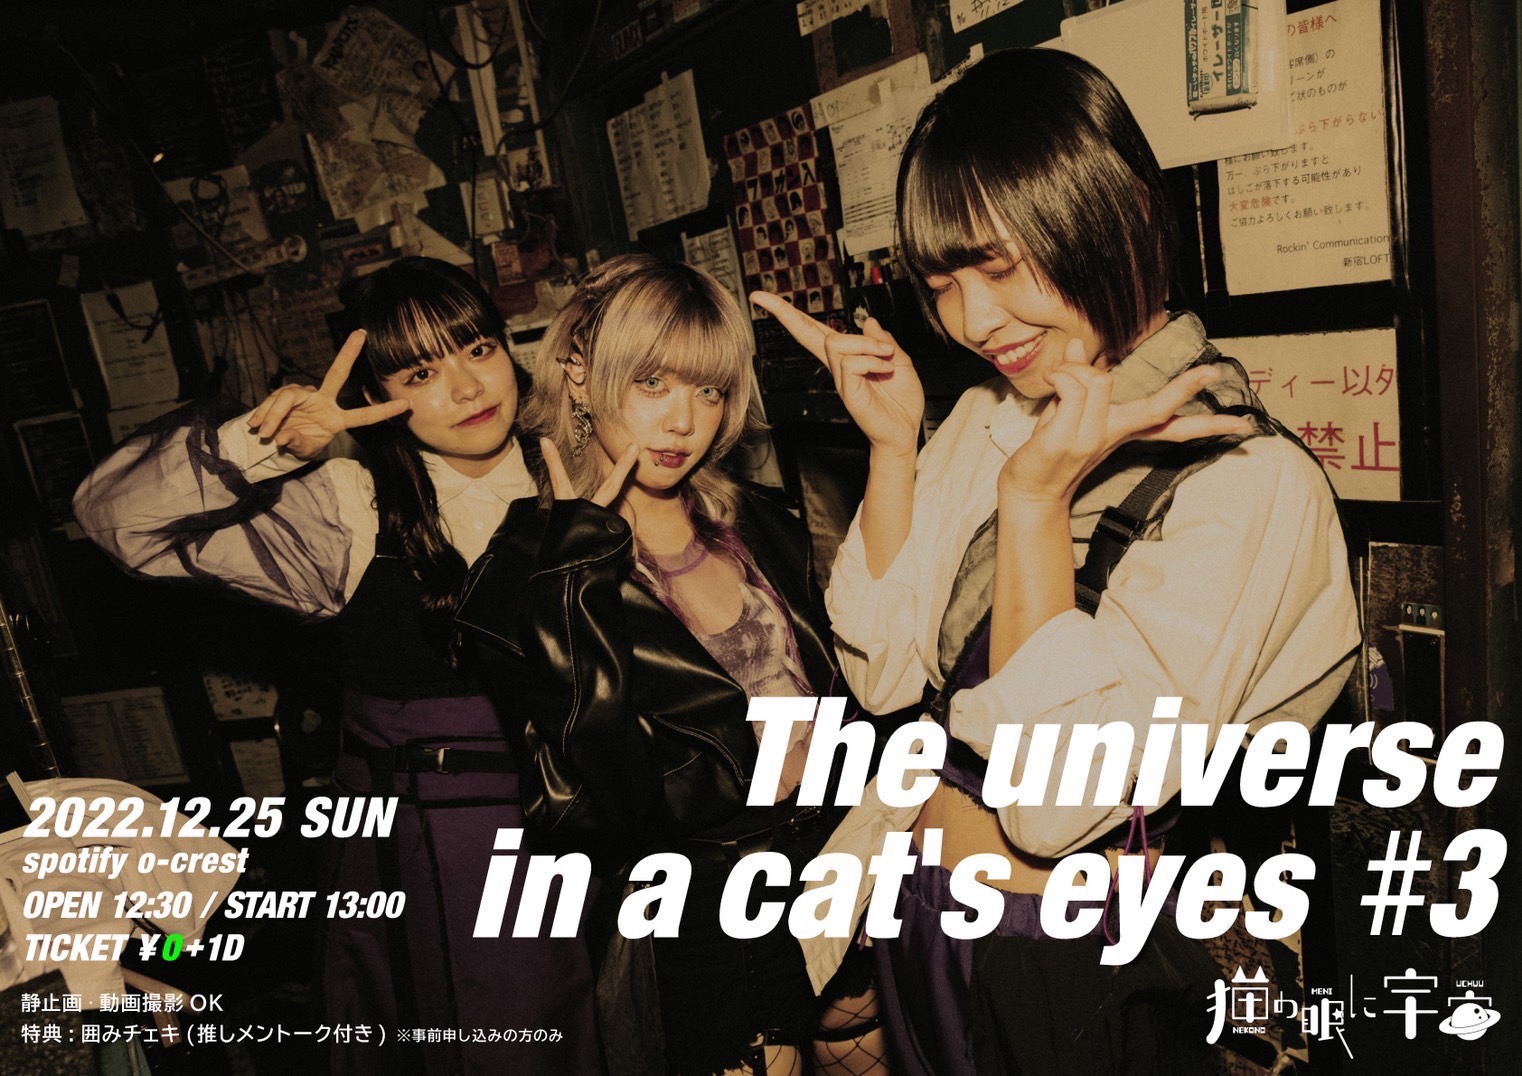 猫の眼に宇宙  無銭  ワンマン   『The universe in a cat's eyes』#3